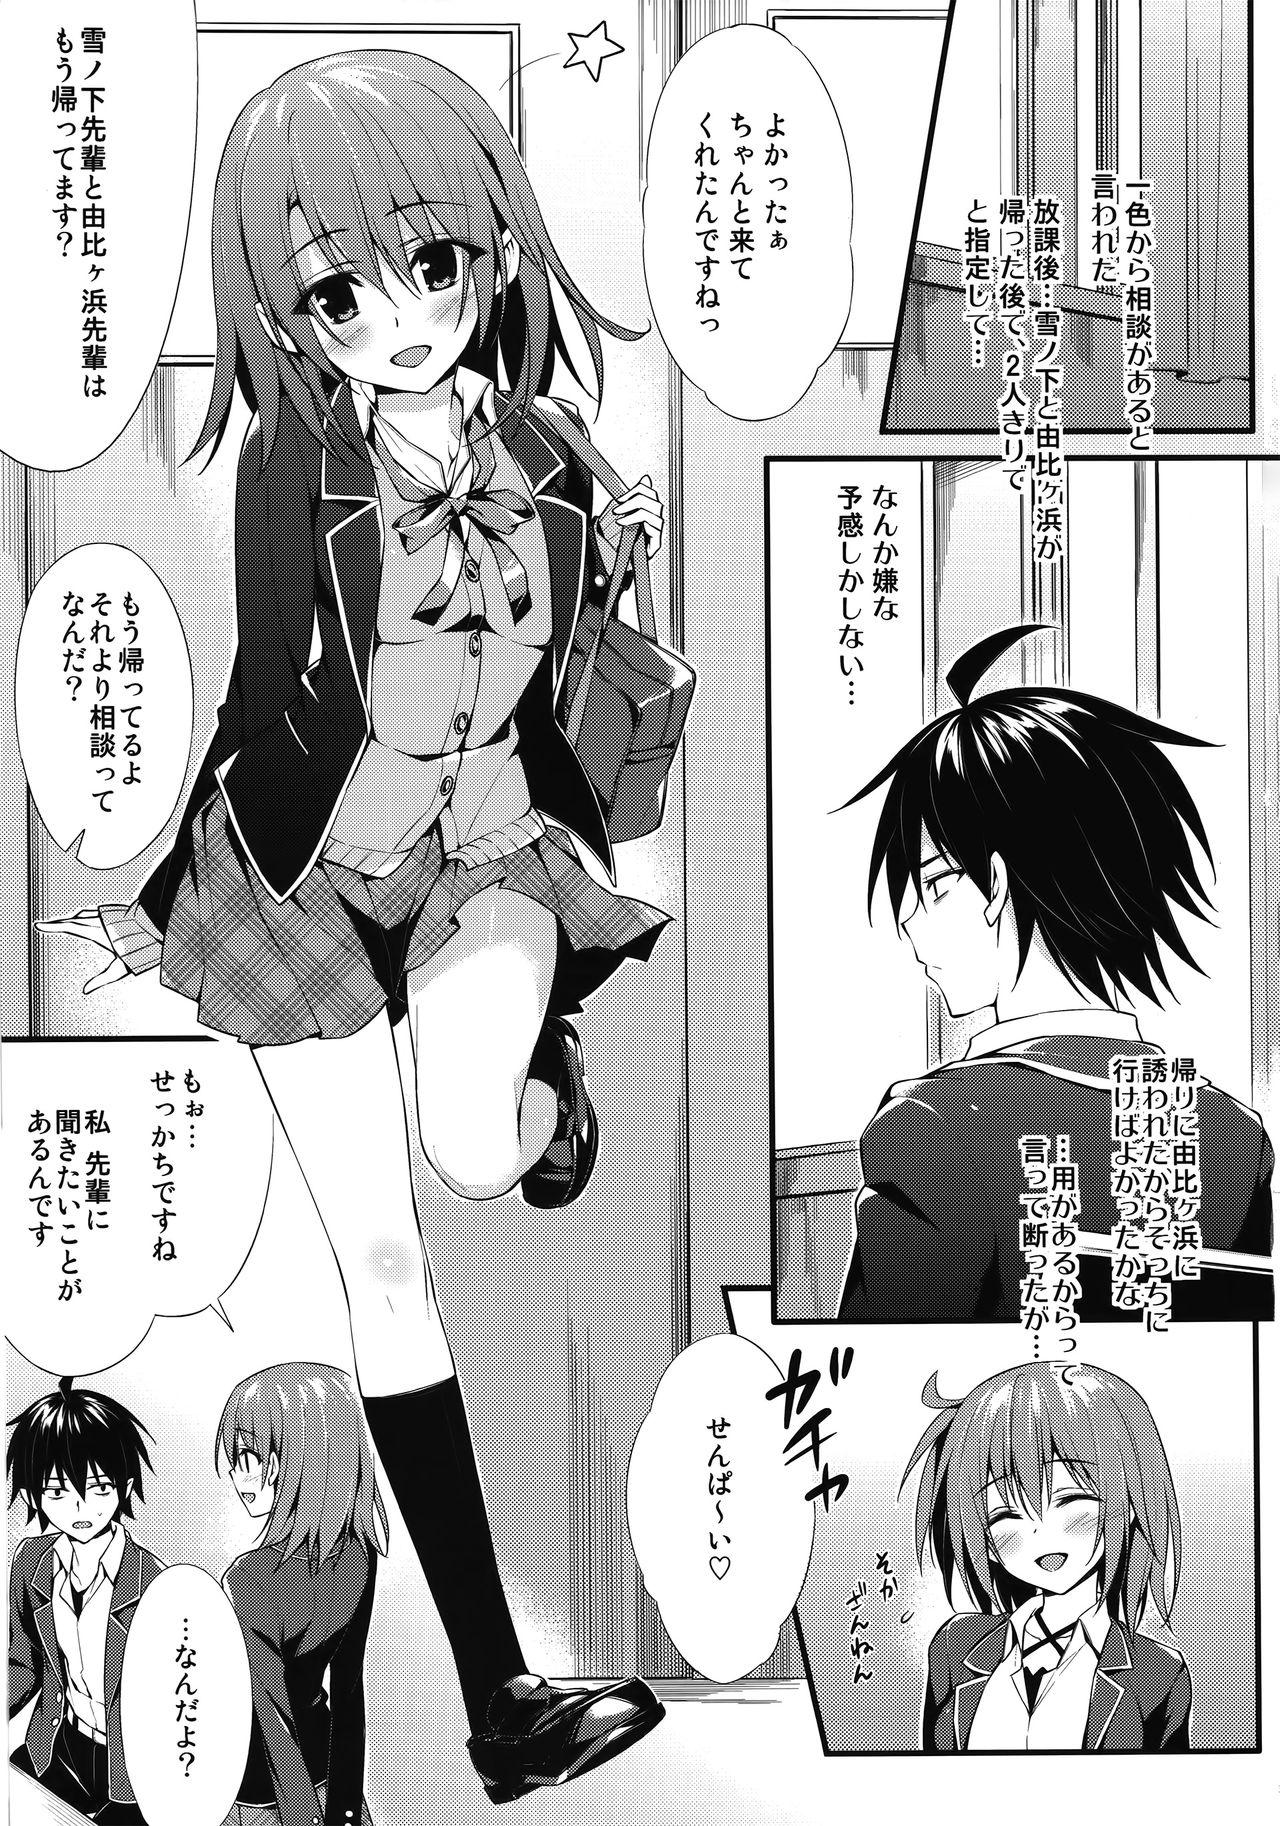 Cop Irohasu Gentei - Yahari ore no seishun love come wa machigatteiru Stepmother - Page 2